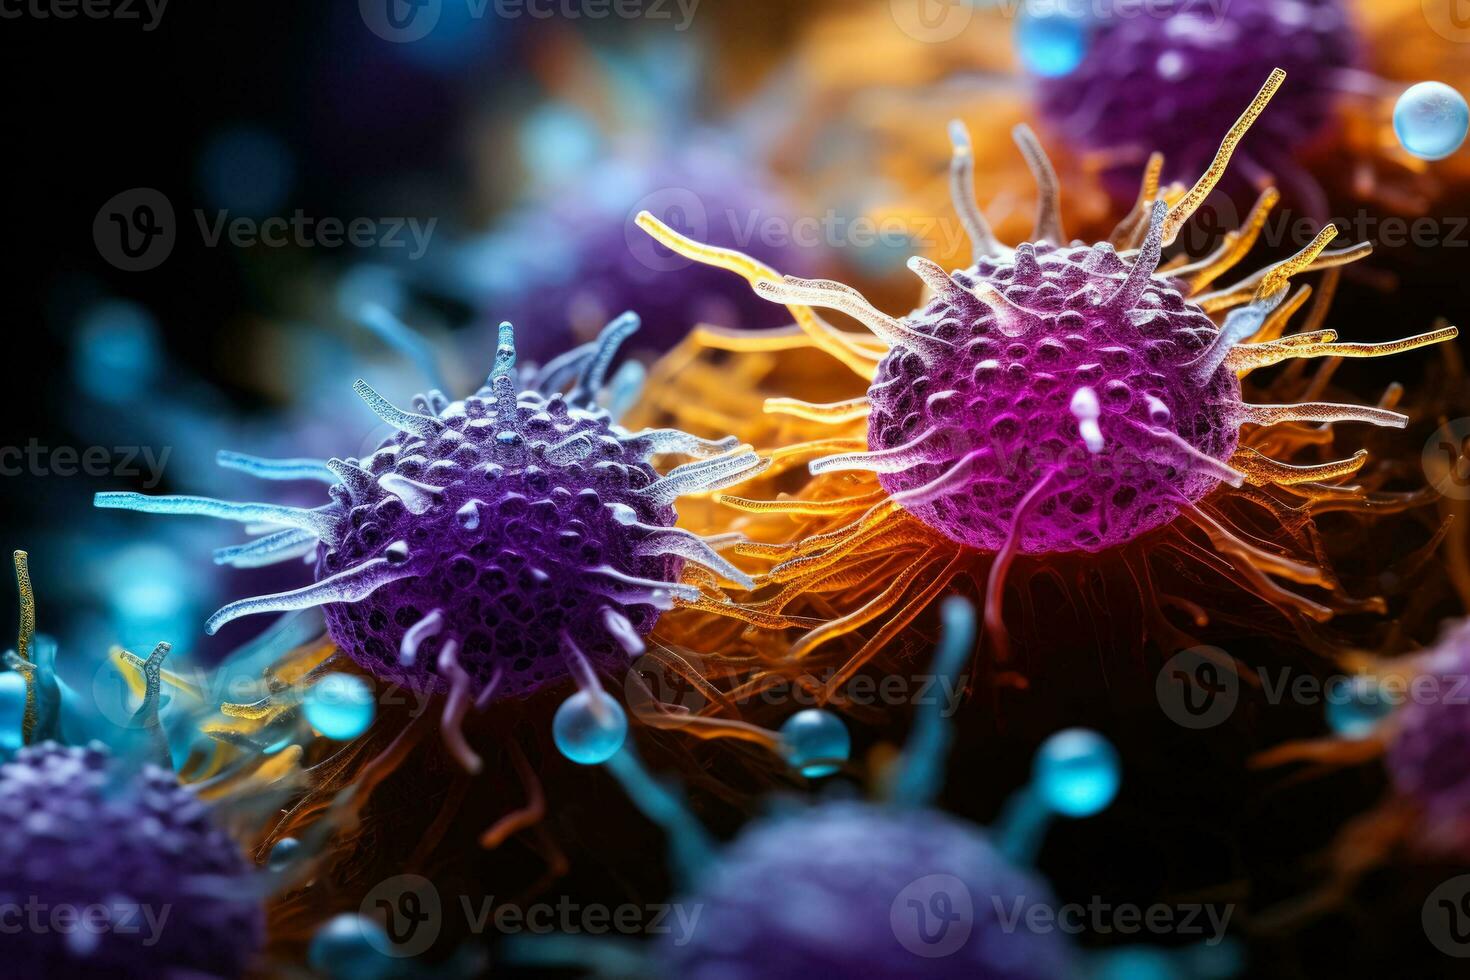 eccezionale macro Immagine di virus infetto cellule sotto potente microscopia foto